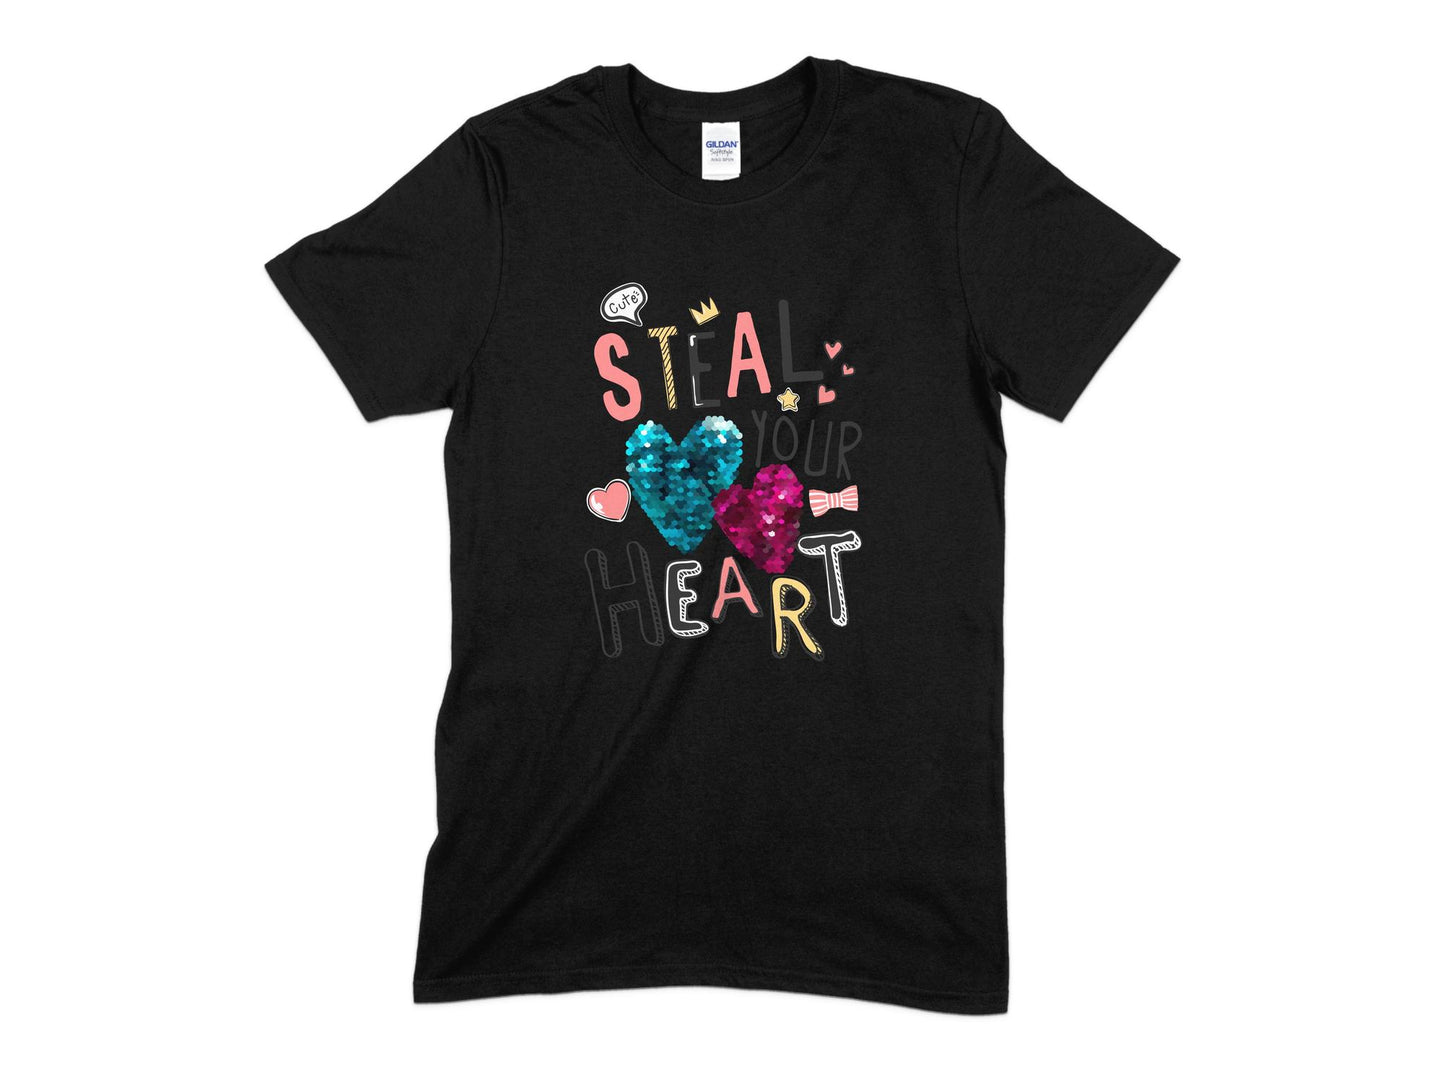 Steal Your Heart T-Shirt, Cute T-Shirt